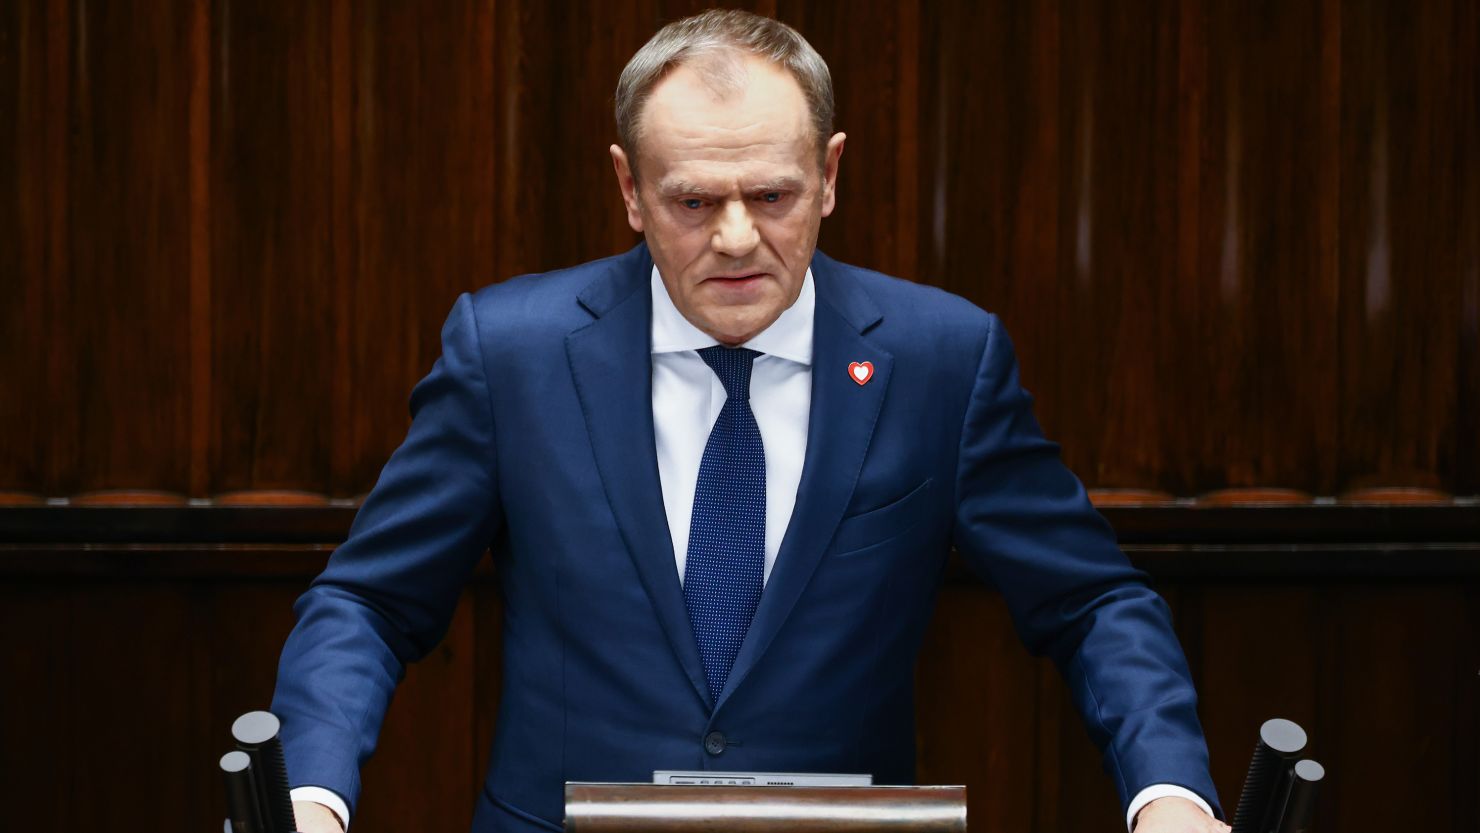 “Të shmangim konfliktet”, Tusk: Evropa duhet të investojë më shumë në mbrojtje